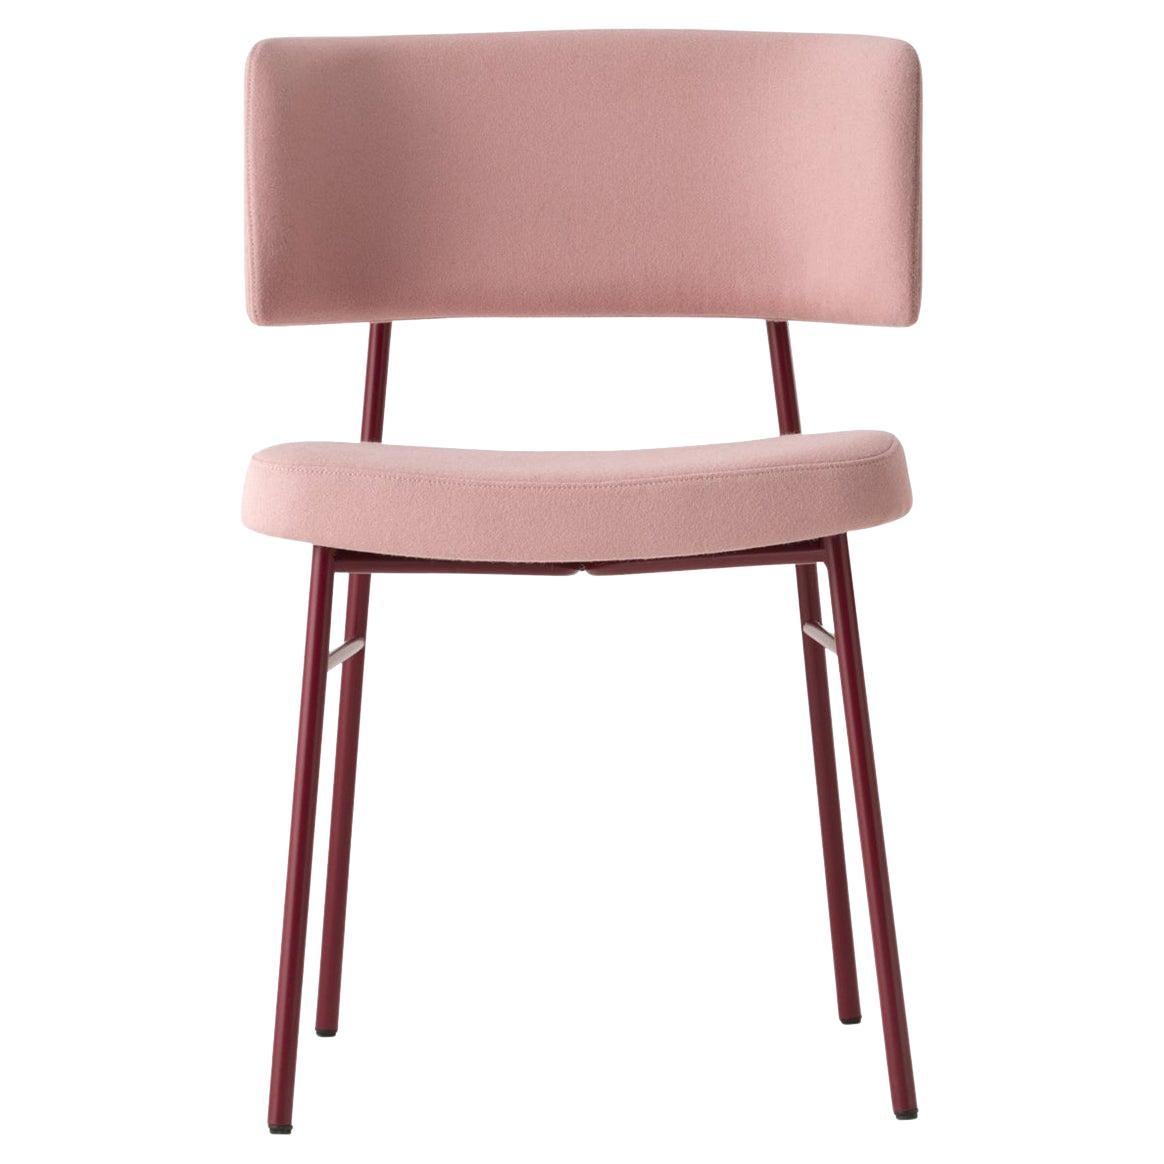 Le confort, une forme ergonomique et une structure résistante sont les caractéristiques du design &New, la nouvelle chaise Trabà conçue par EP Studio.
La courbure du dossier, généreusement rembourré, comme l'assise, et la structure dynamique et